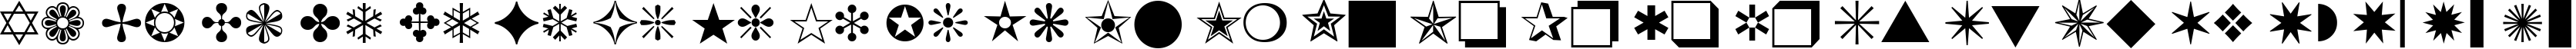 Пример написания английского алфавита шрифтом Zapf Dingbats BT